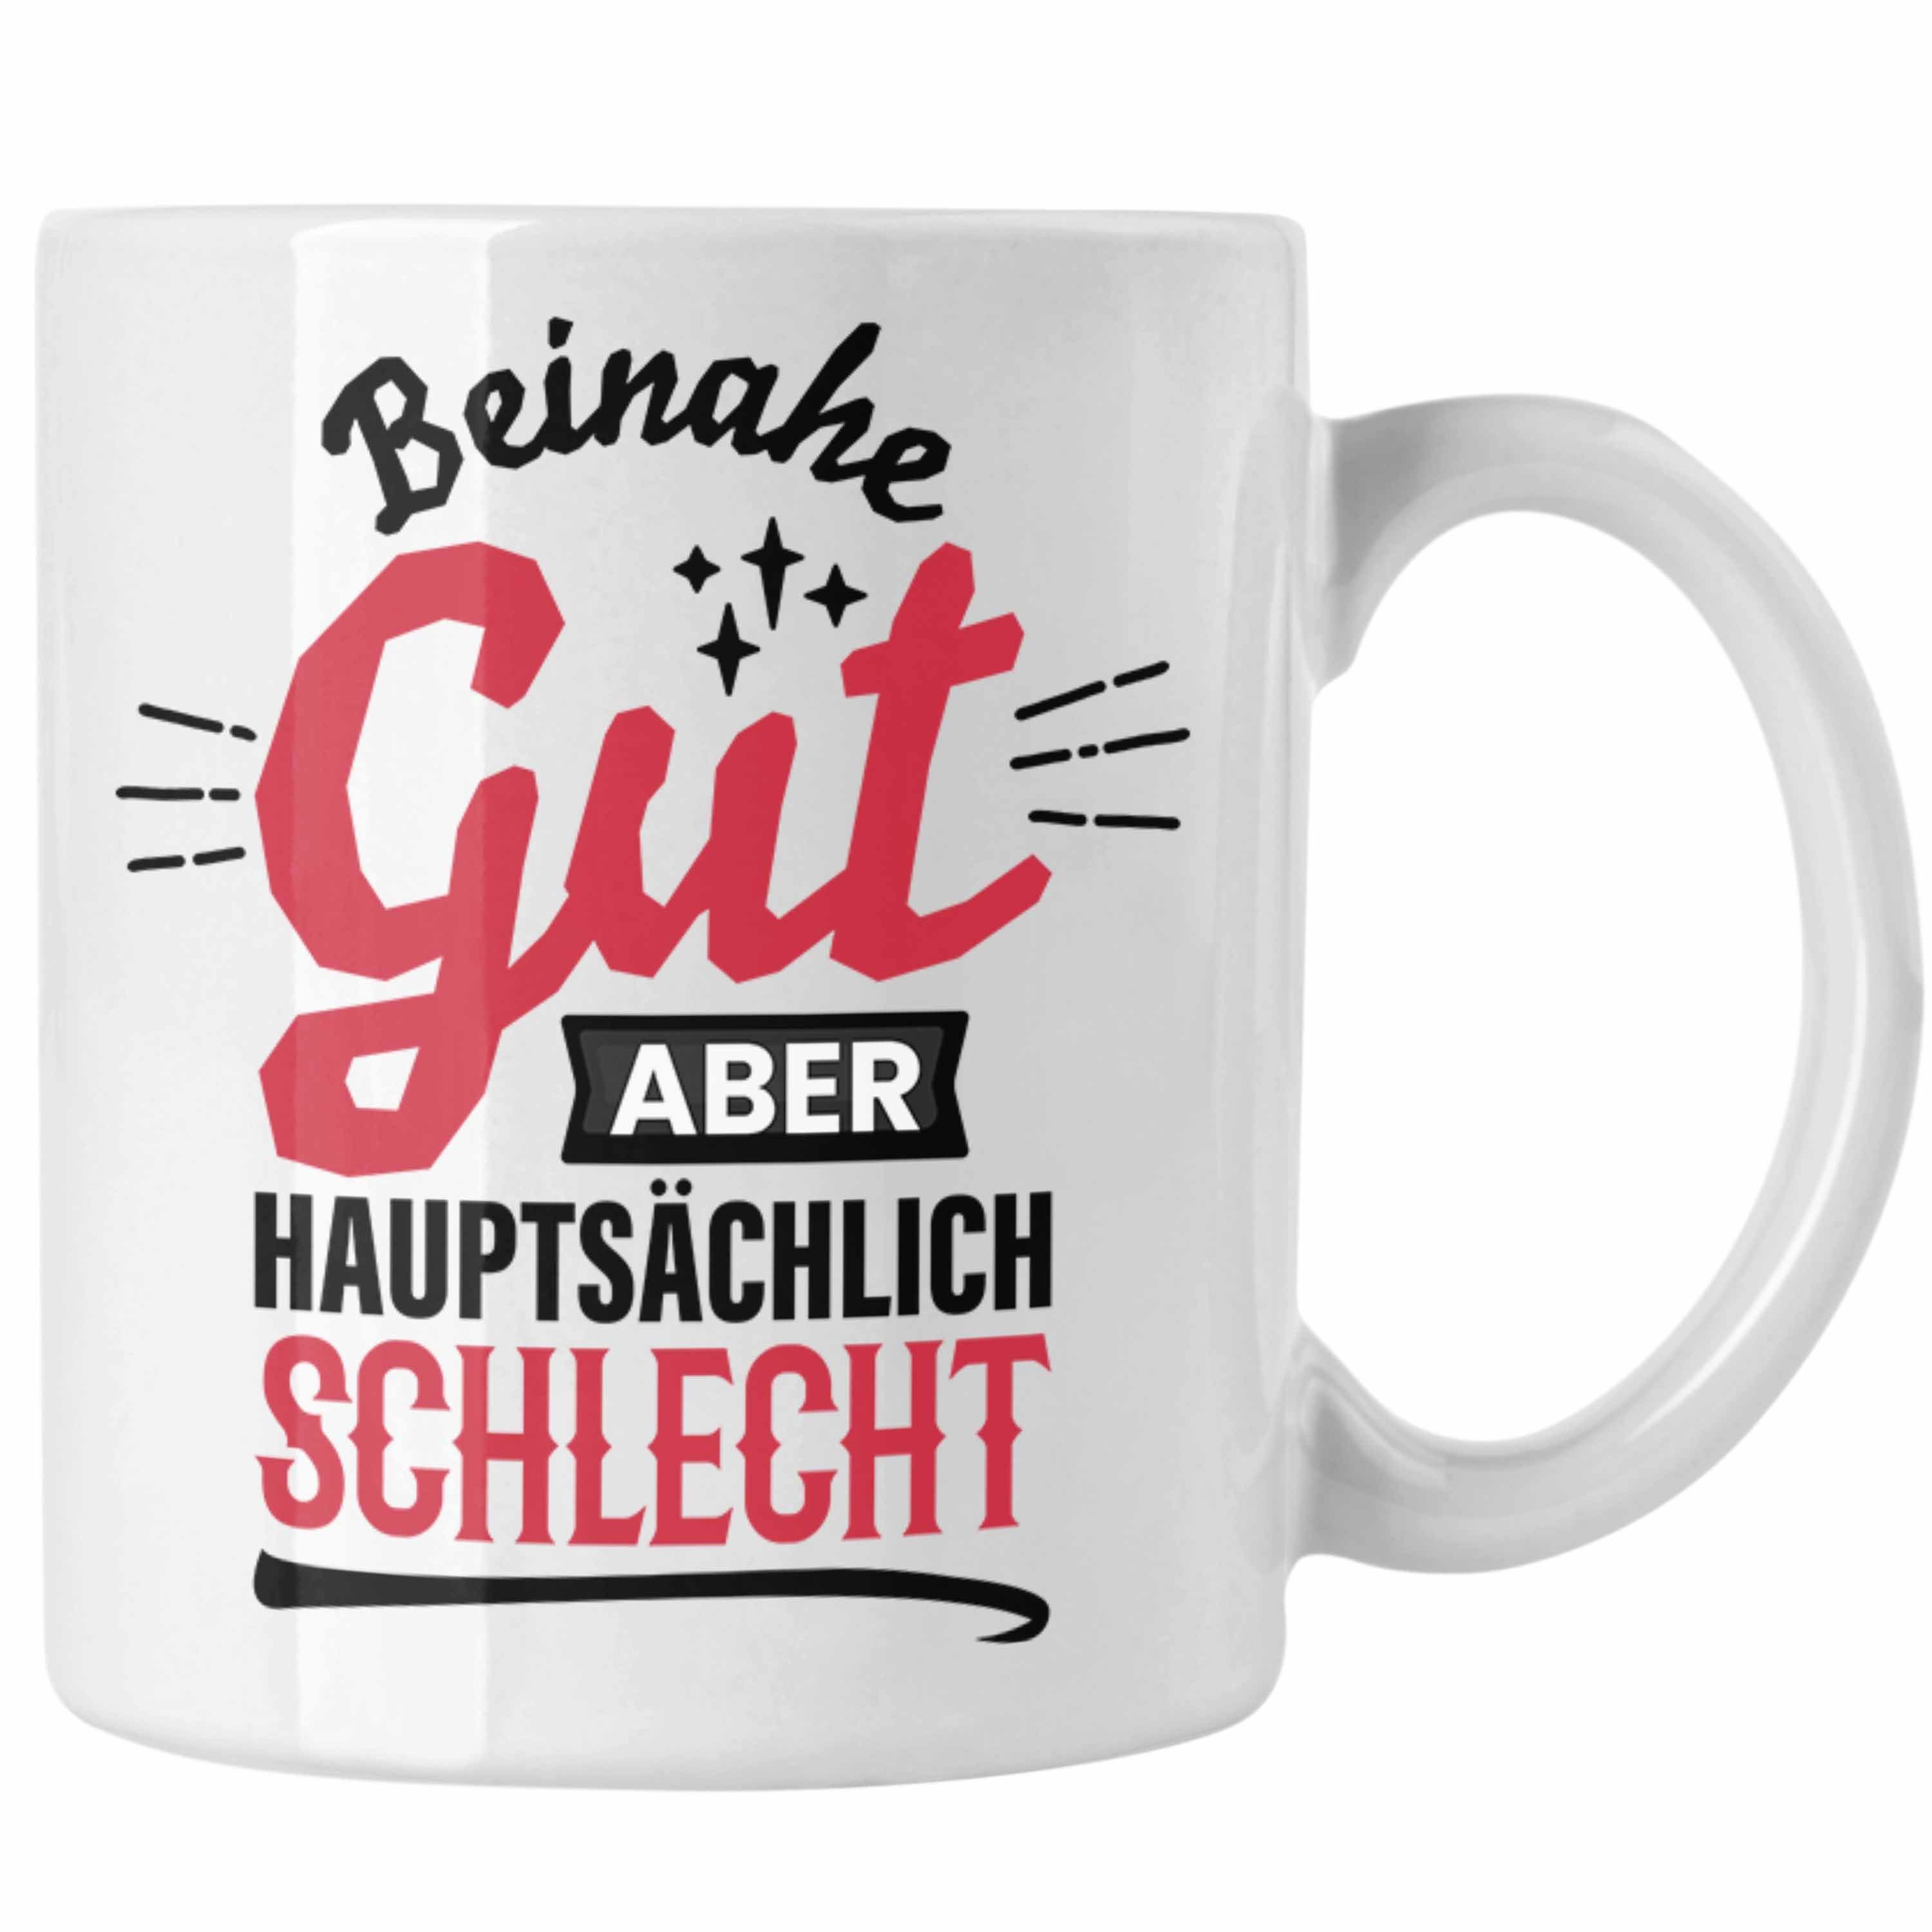 Trendation Tasse Lustiger Spruch Kaffee-Becher Tasse Beinahe Gut Aber Hauptsächlich Sch Weiss